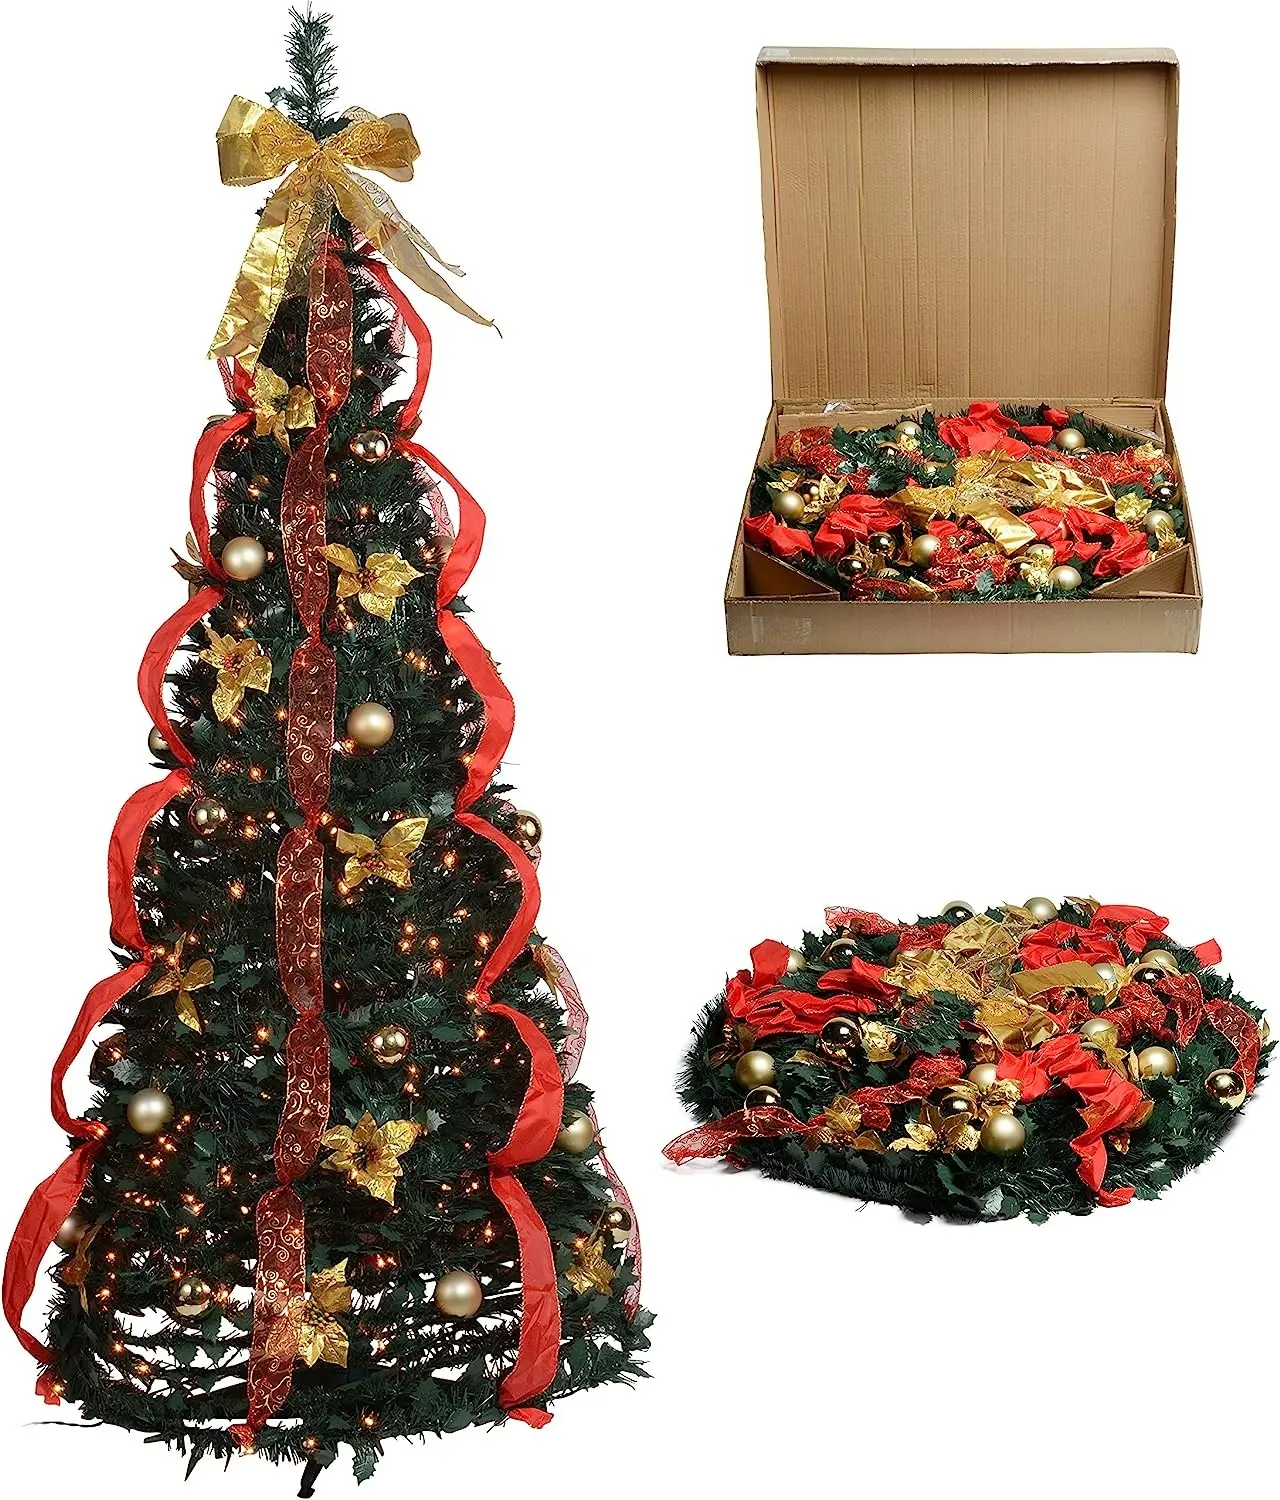 Árbol de Navidad artificial de 6 pies, árbol de Navidad emergente plegable para decoraciones navideñas, hogar, fiesta, decoración de oficina